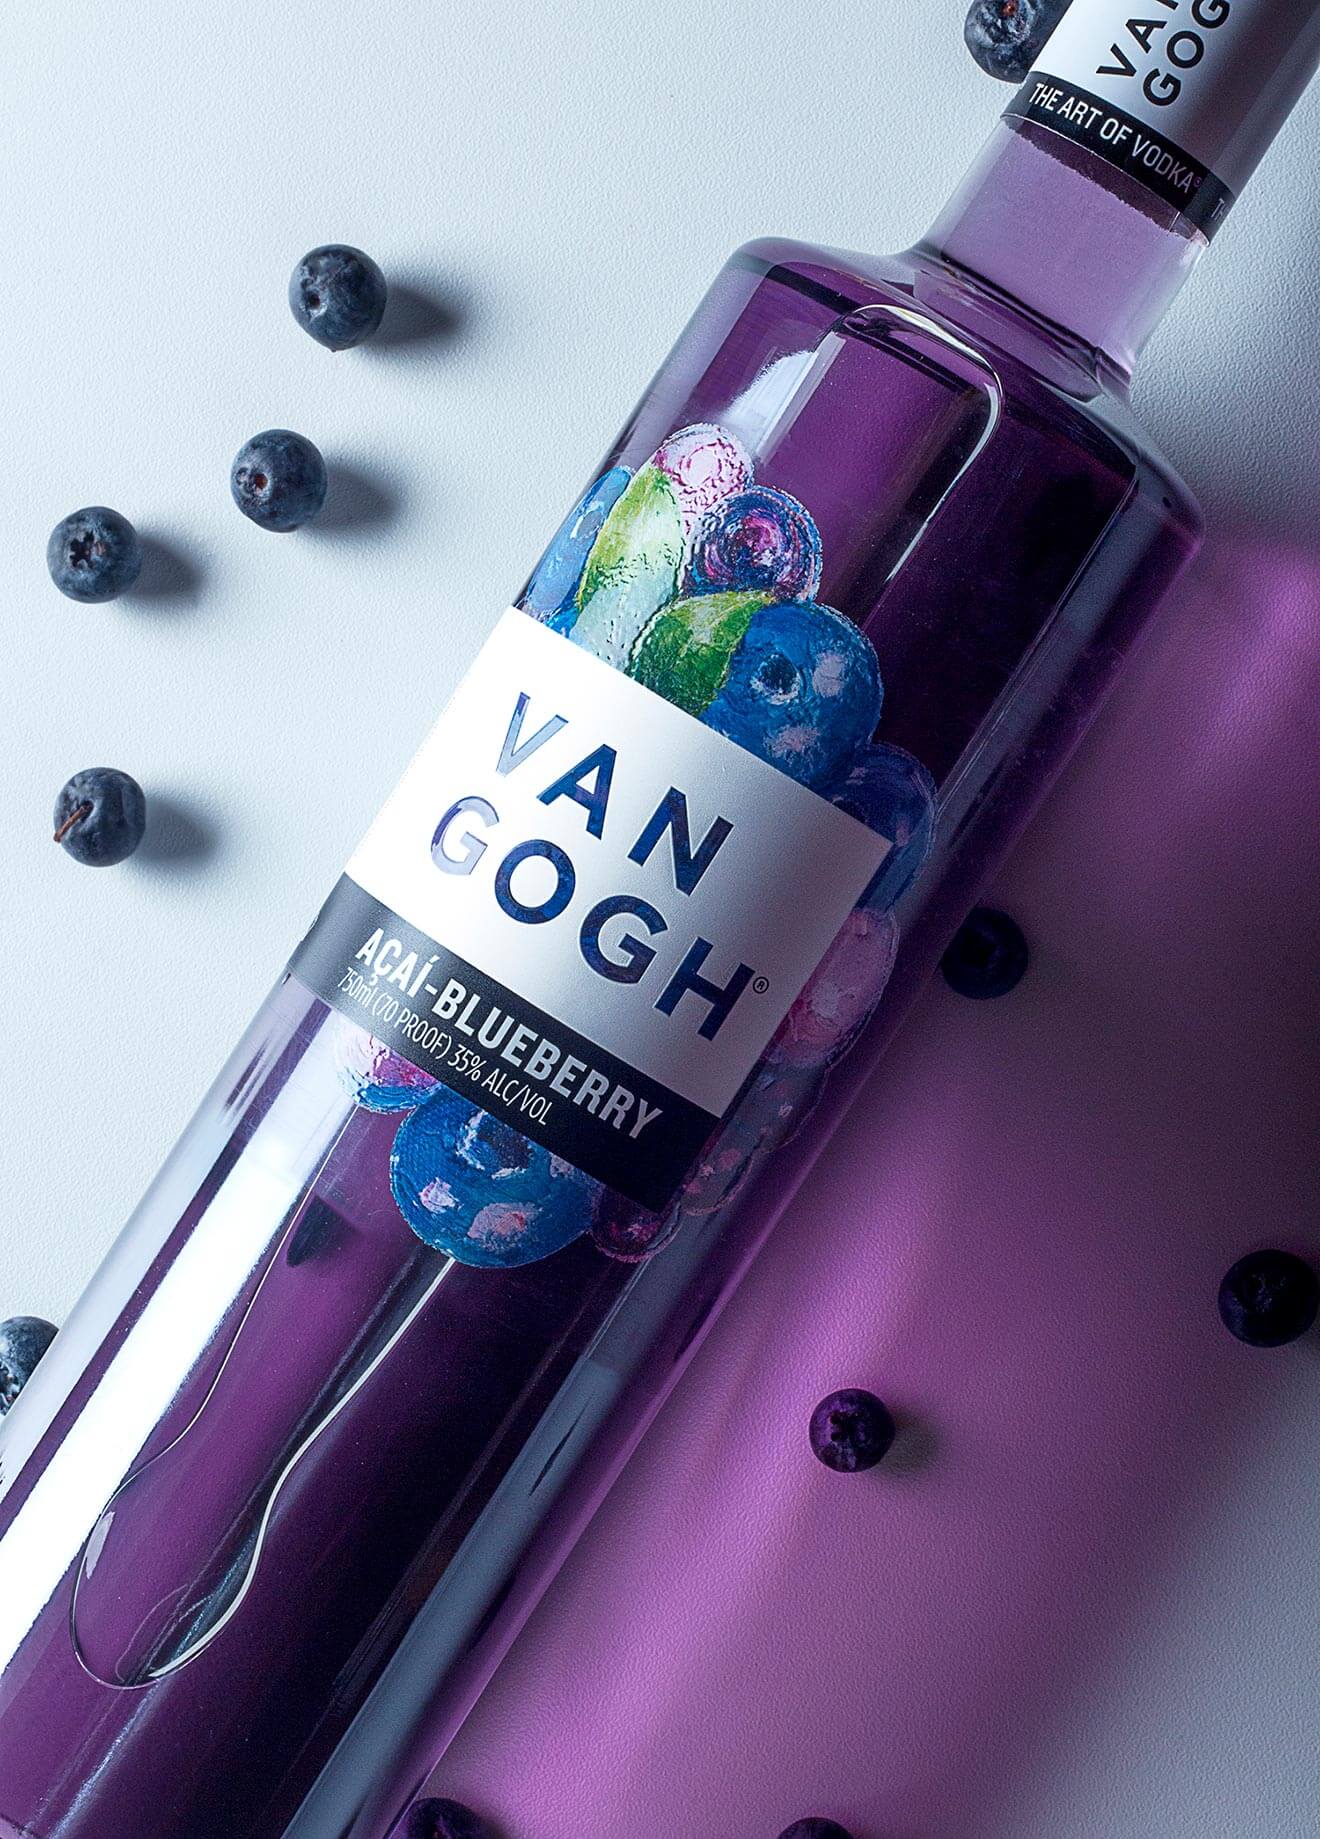 Van Gogh Açaí Blueberry Vodka